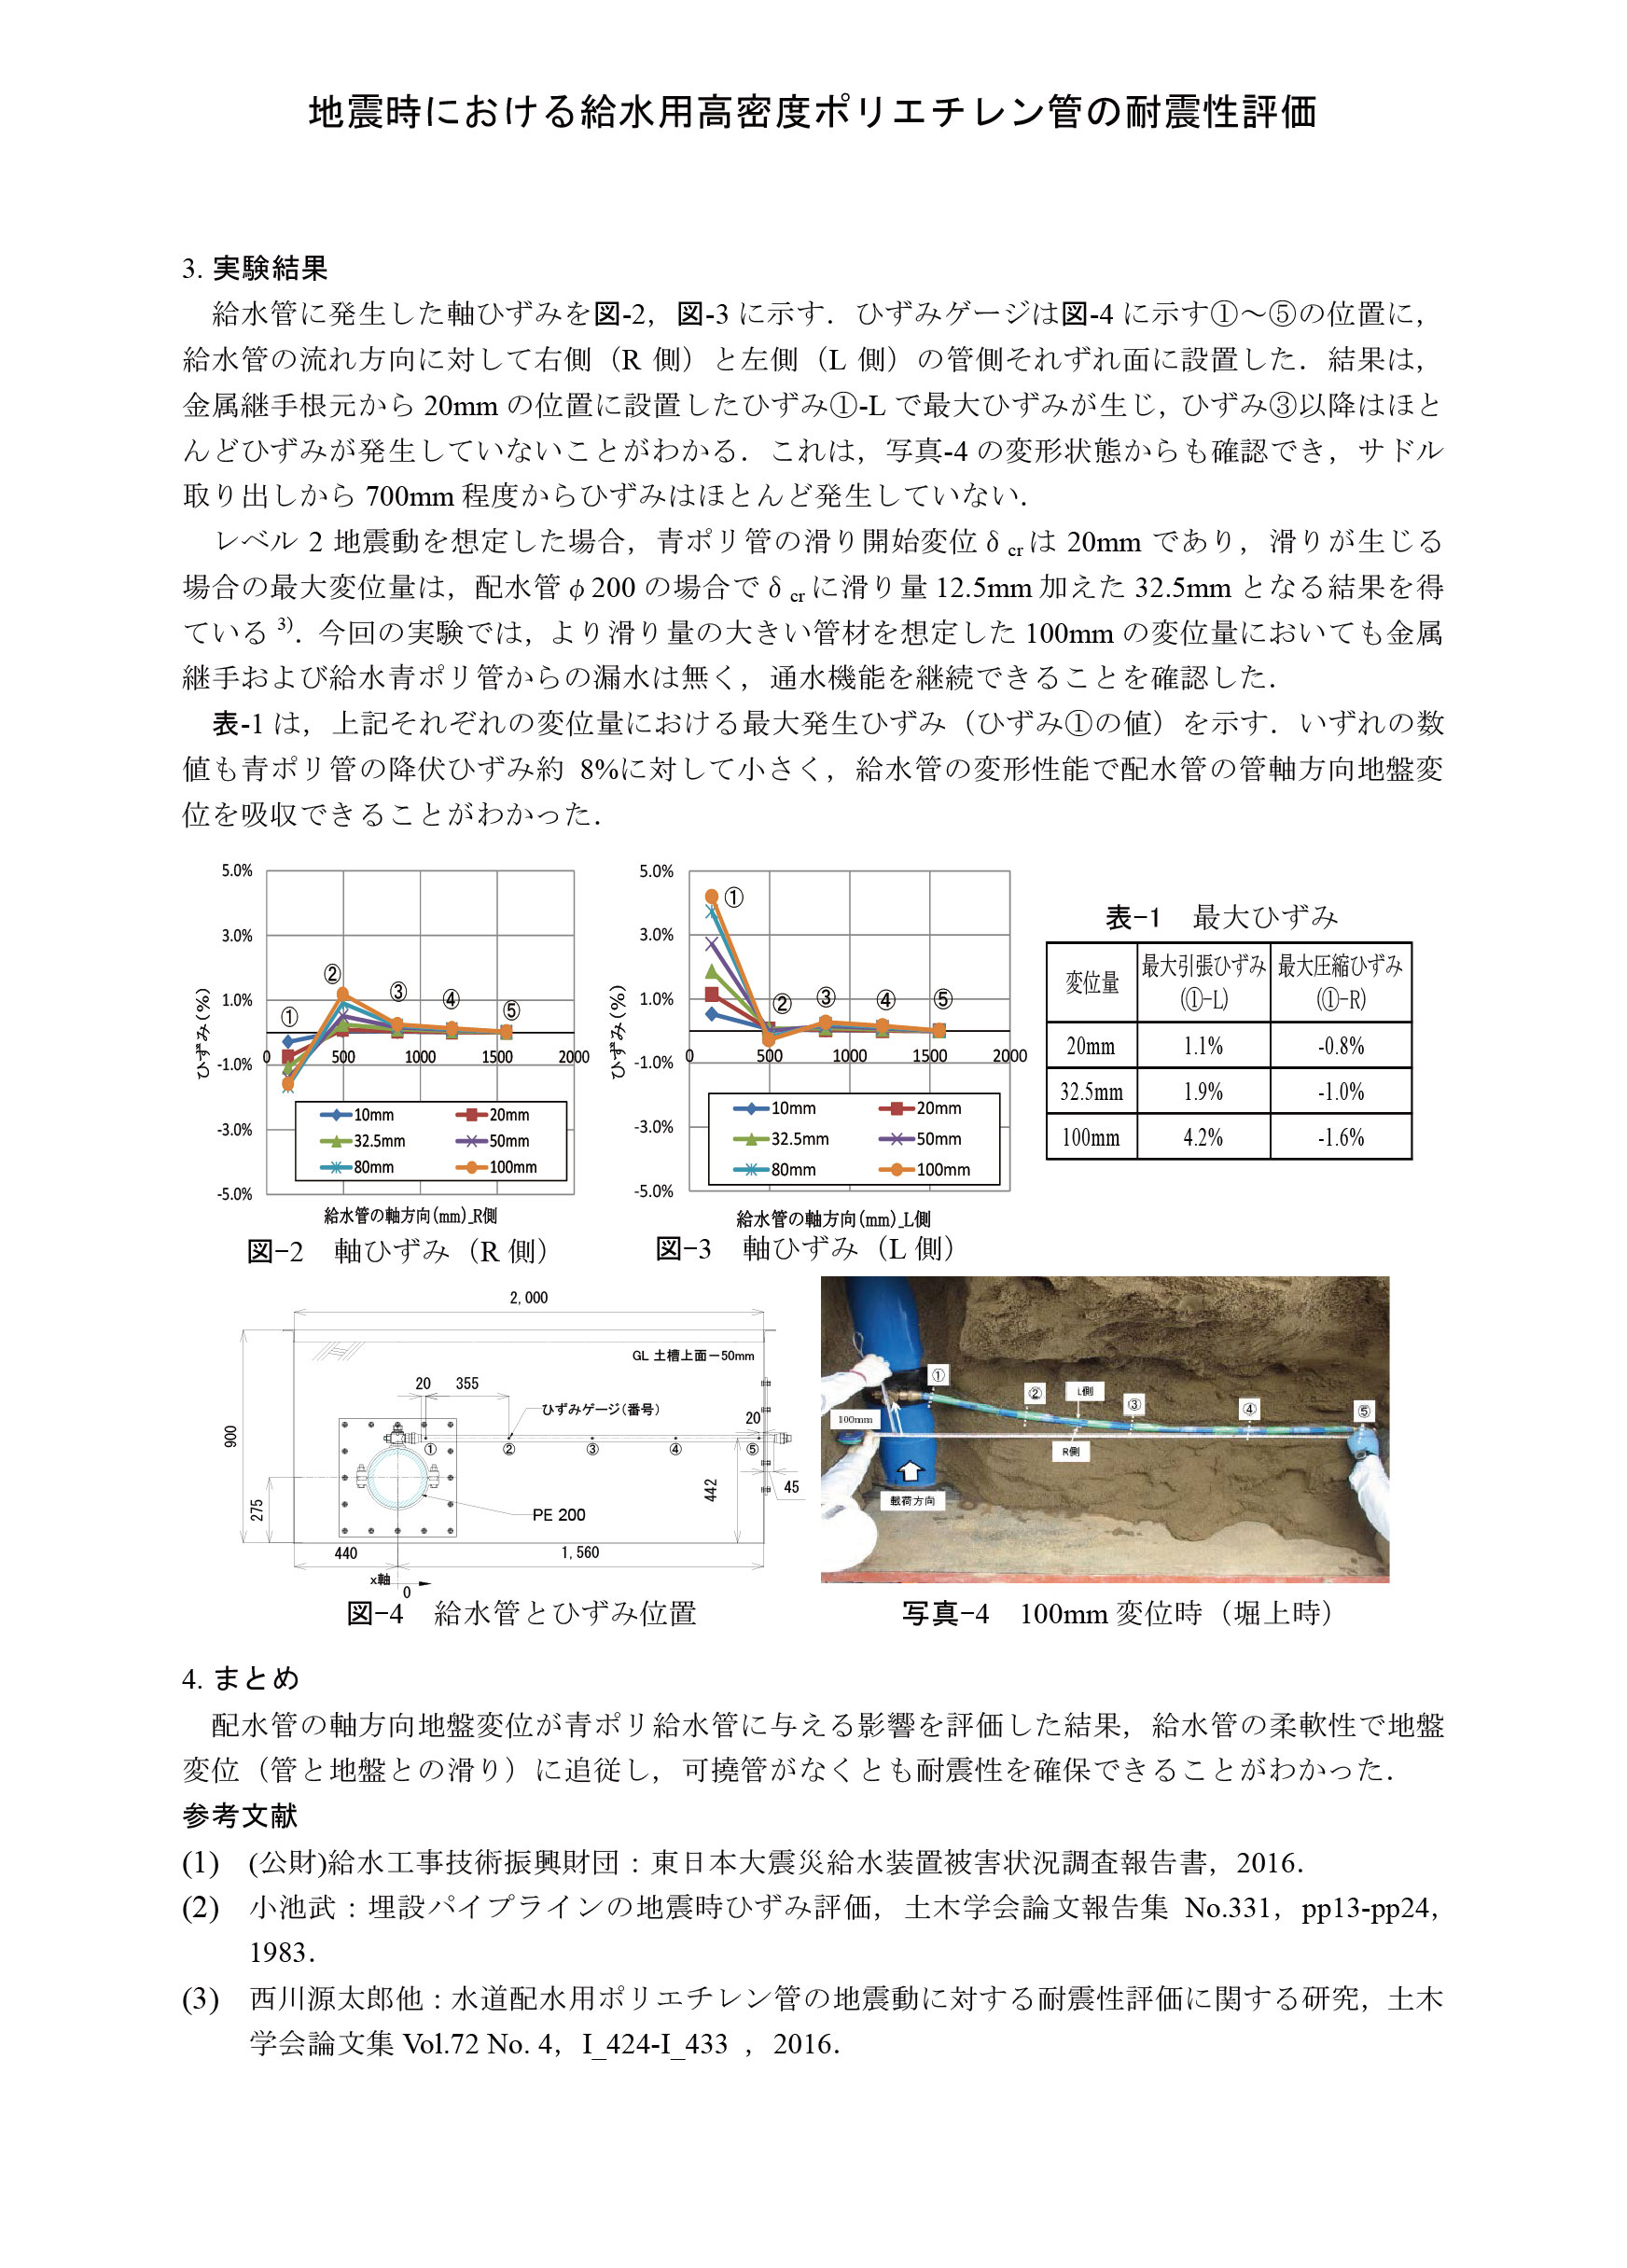 エスロハイパー現場リポート36「地震時における給水用高密度ポリエチレン管の耐震性評価」_2